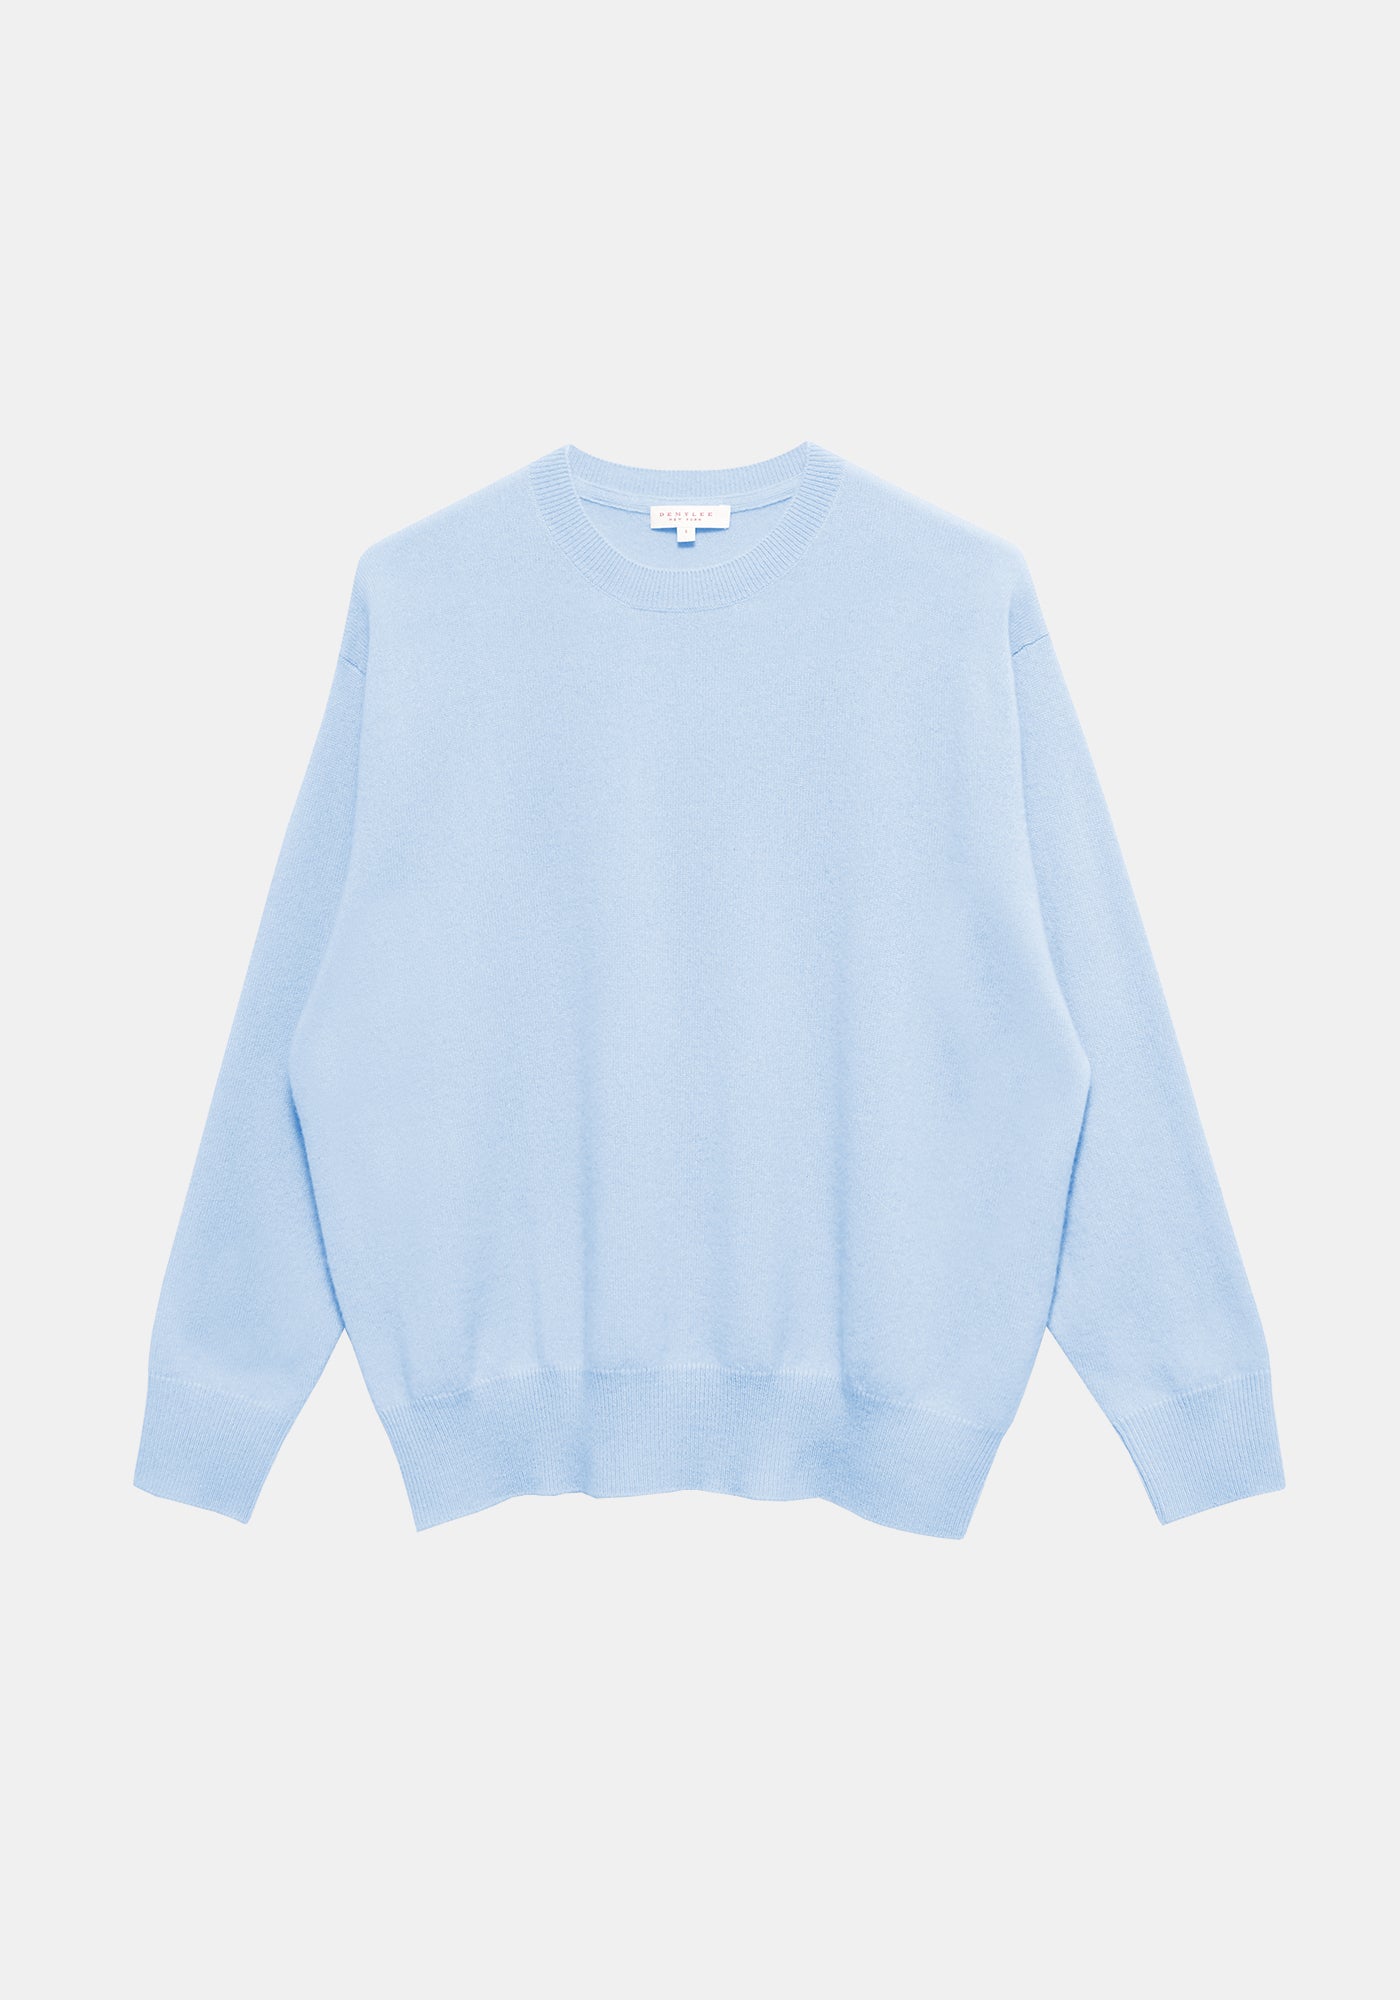 Eider Cashmere Sweater